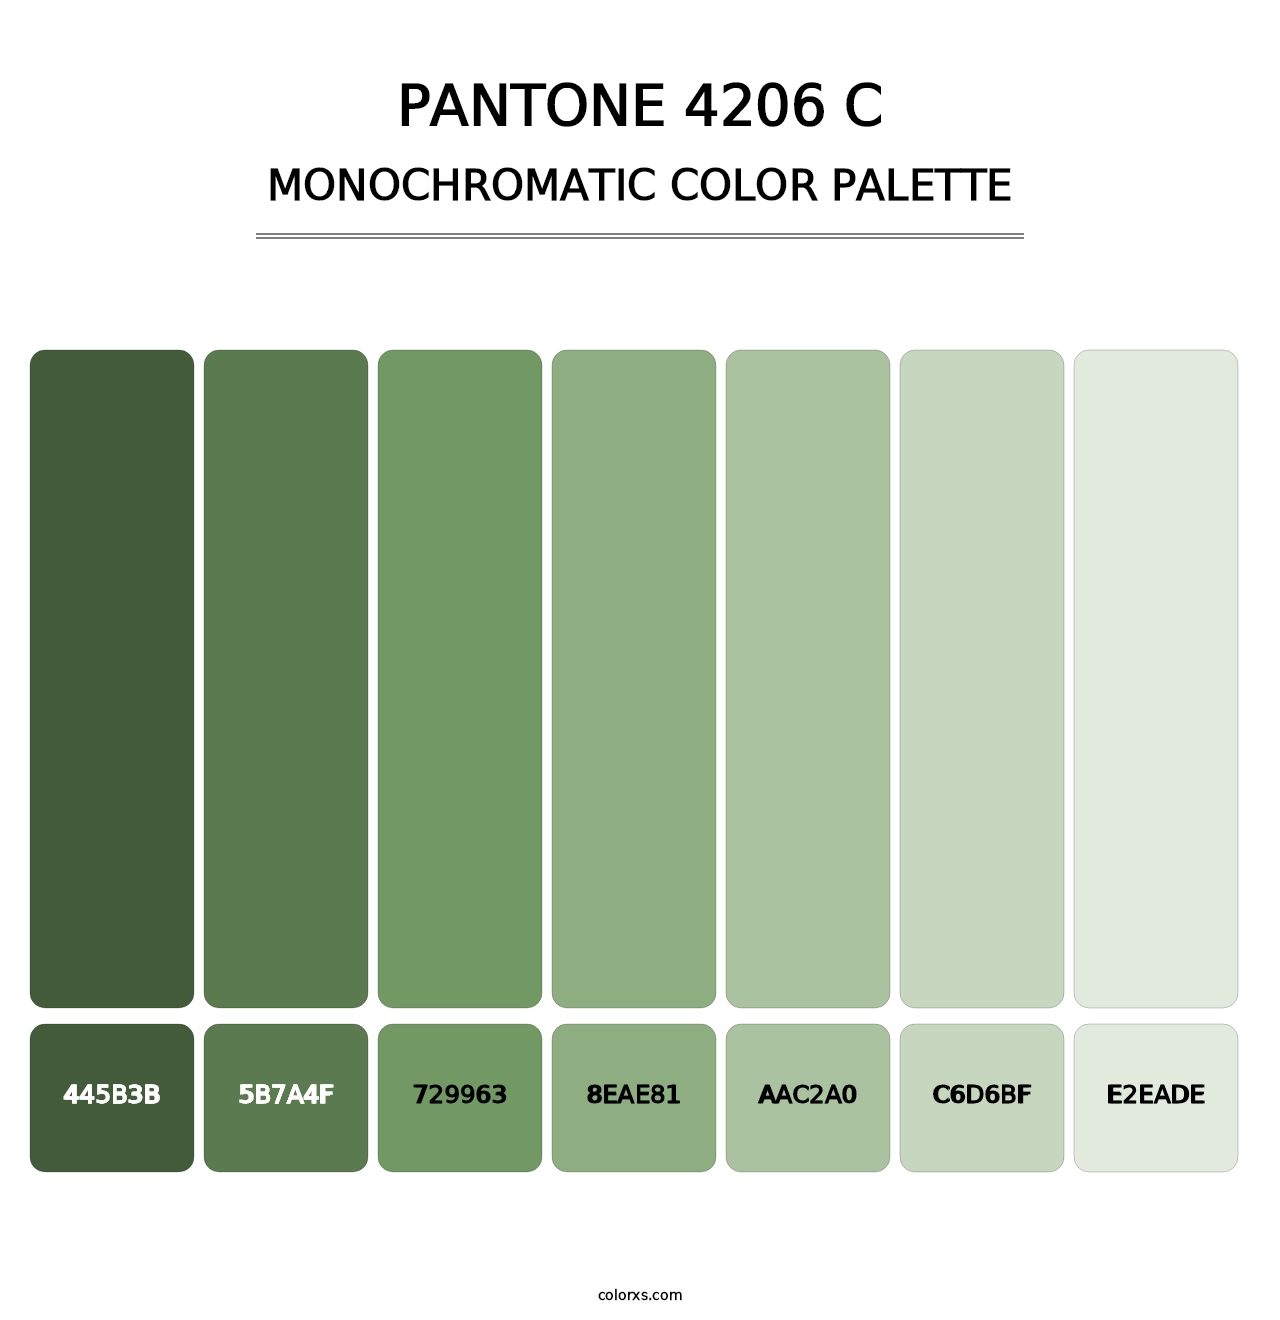 PANTONE 4206 C - Monochromatic Color Palette